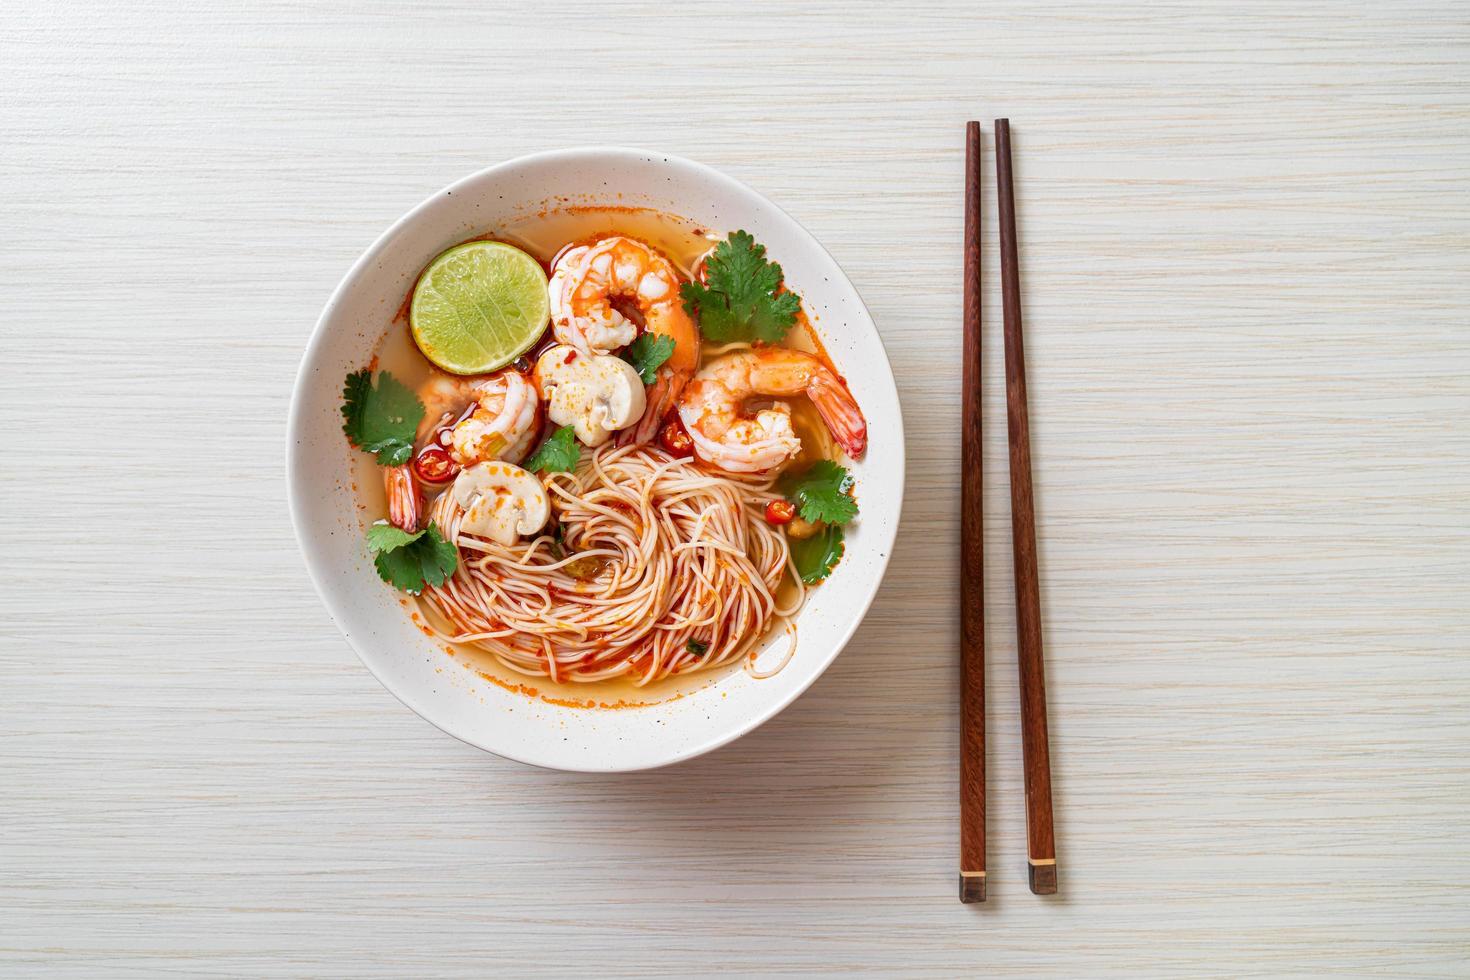 noodles con zuppa piccante e gamberi in una ciotola bianca, o tom yum kung - stile asiatico foto